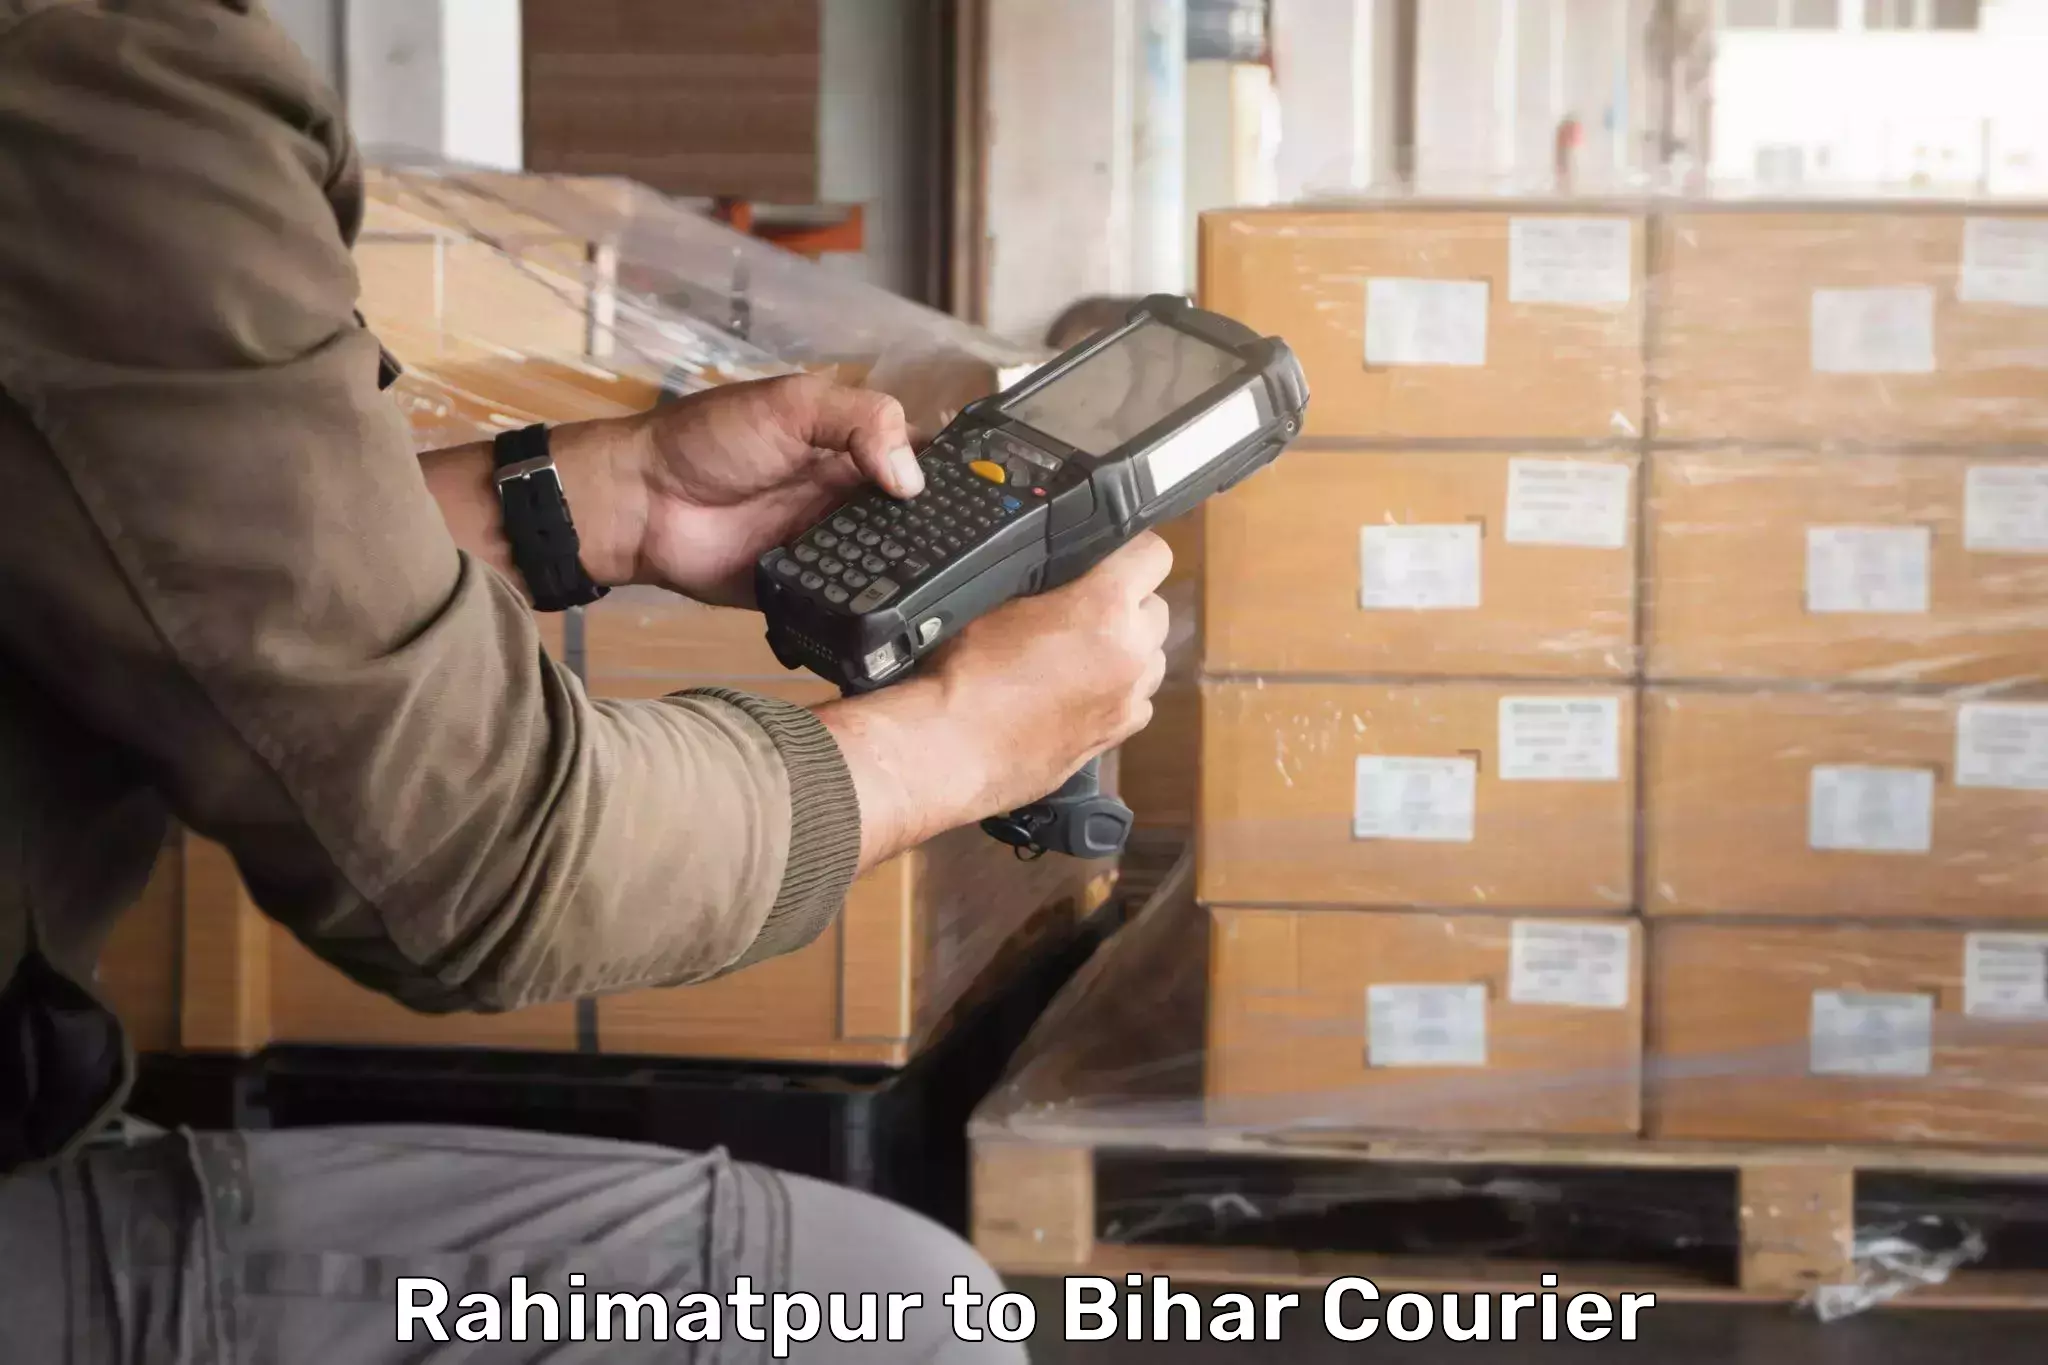 Secure packaging in Rahimatpur to Deo Aurangabad